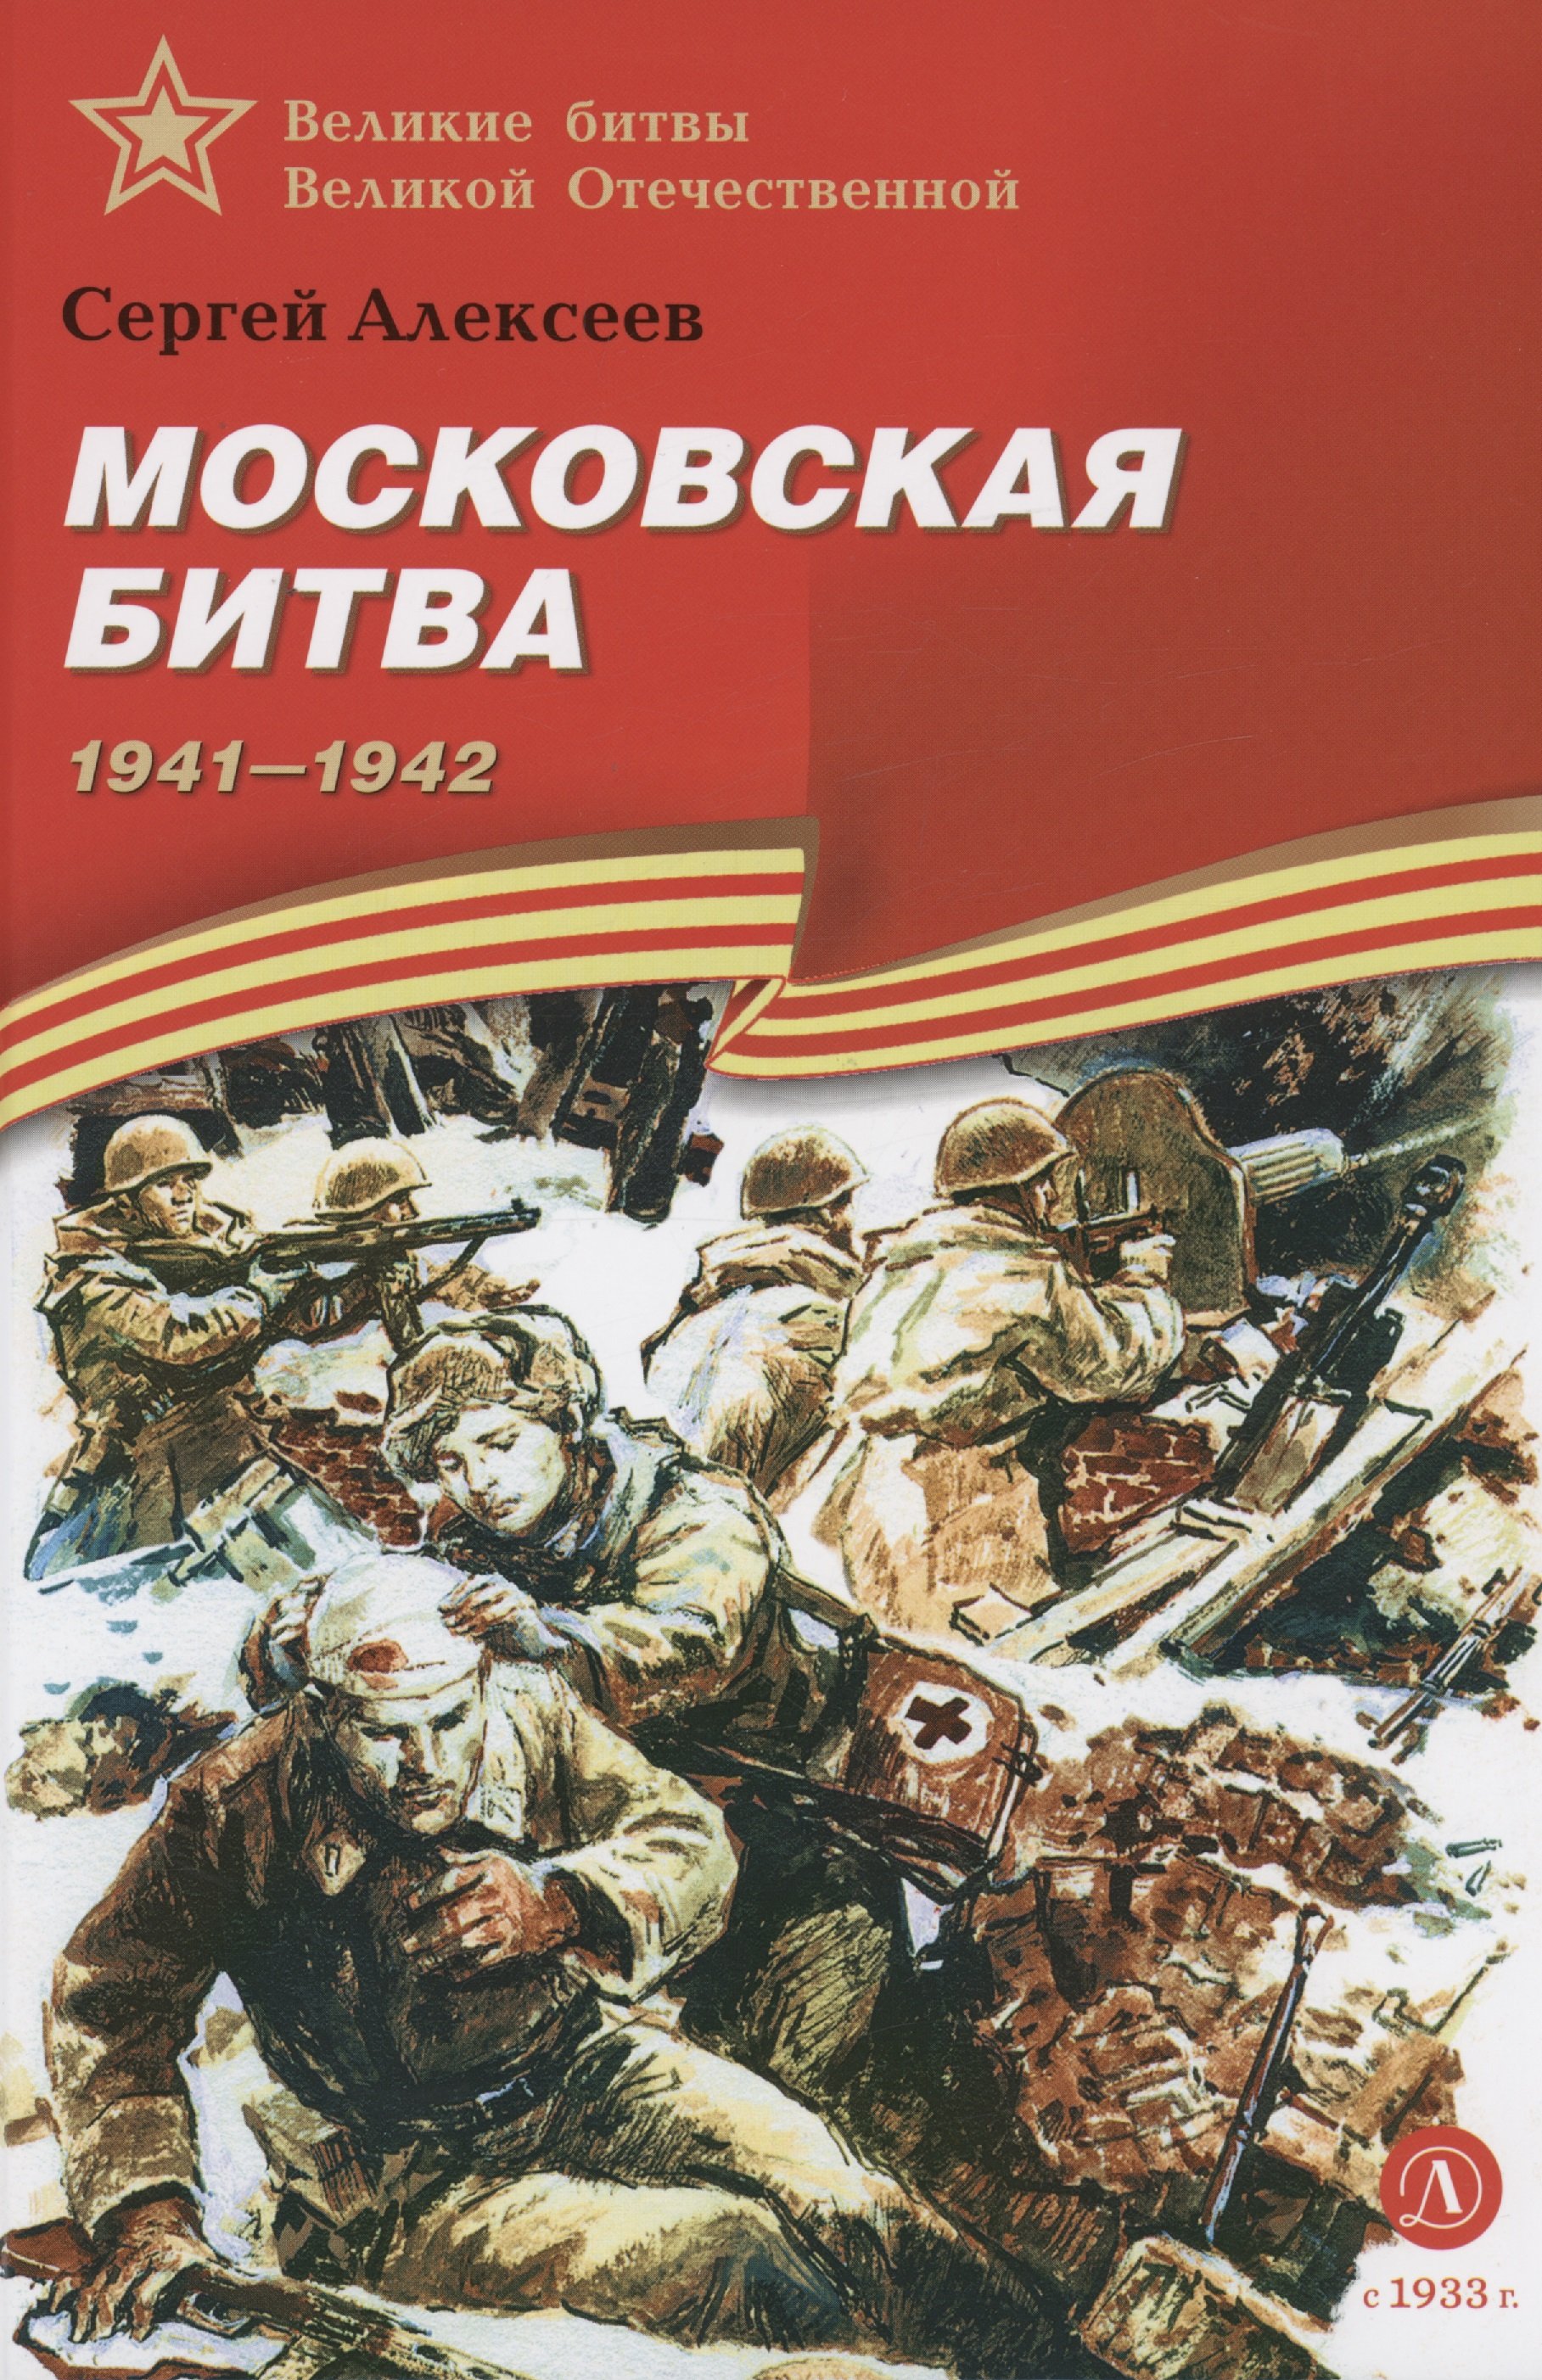   1941-1942